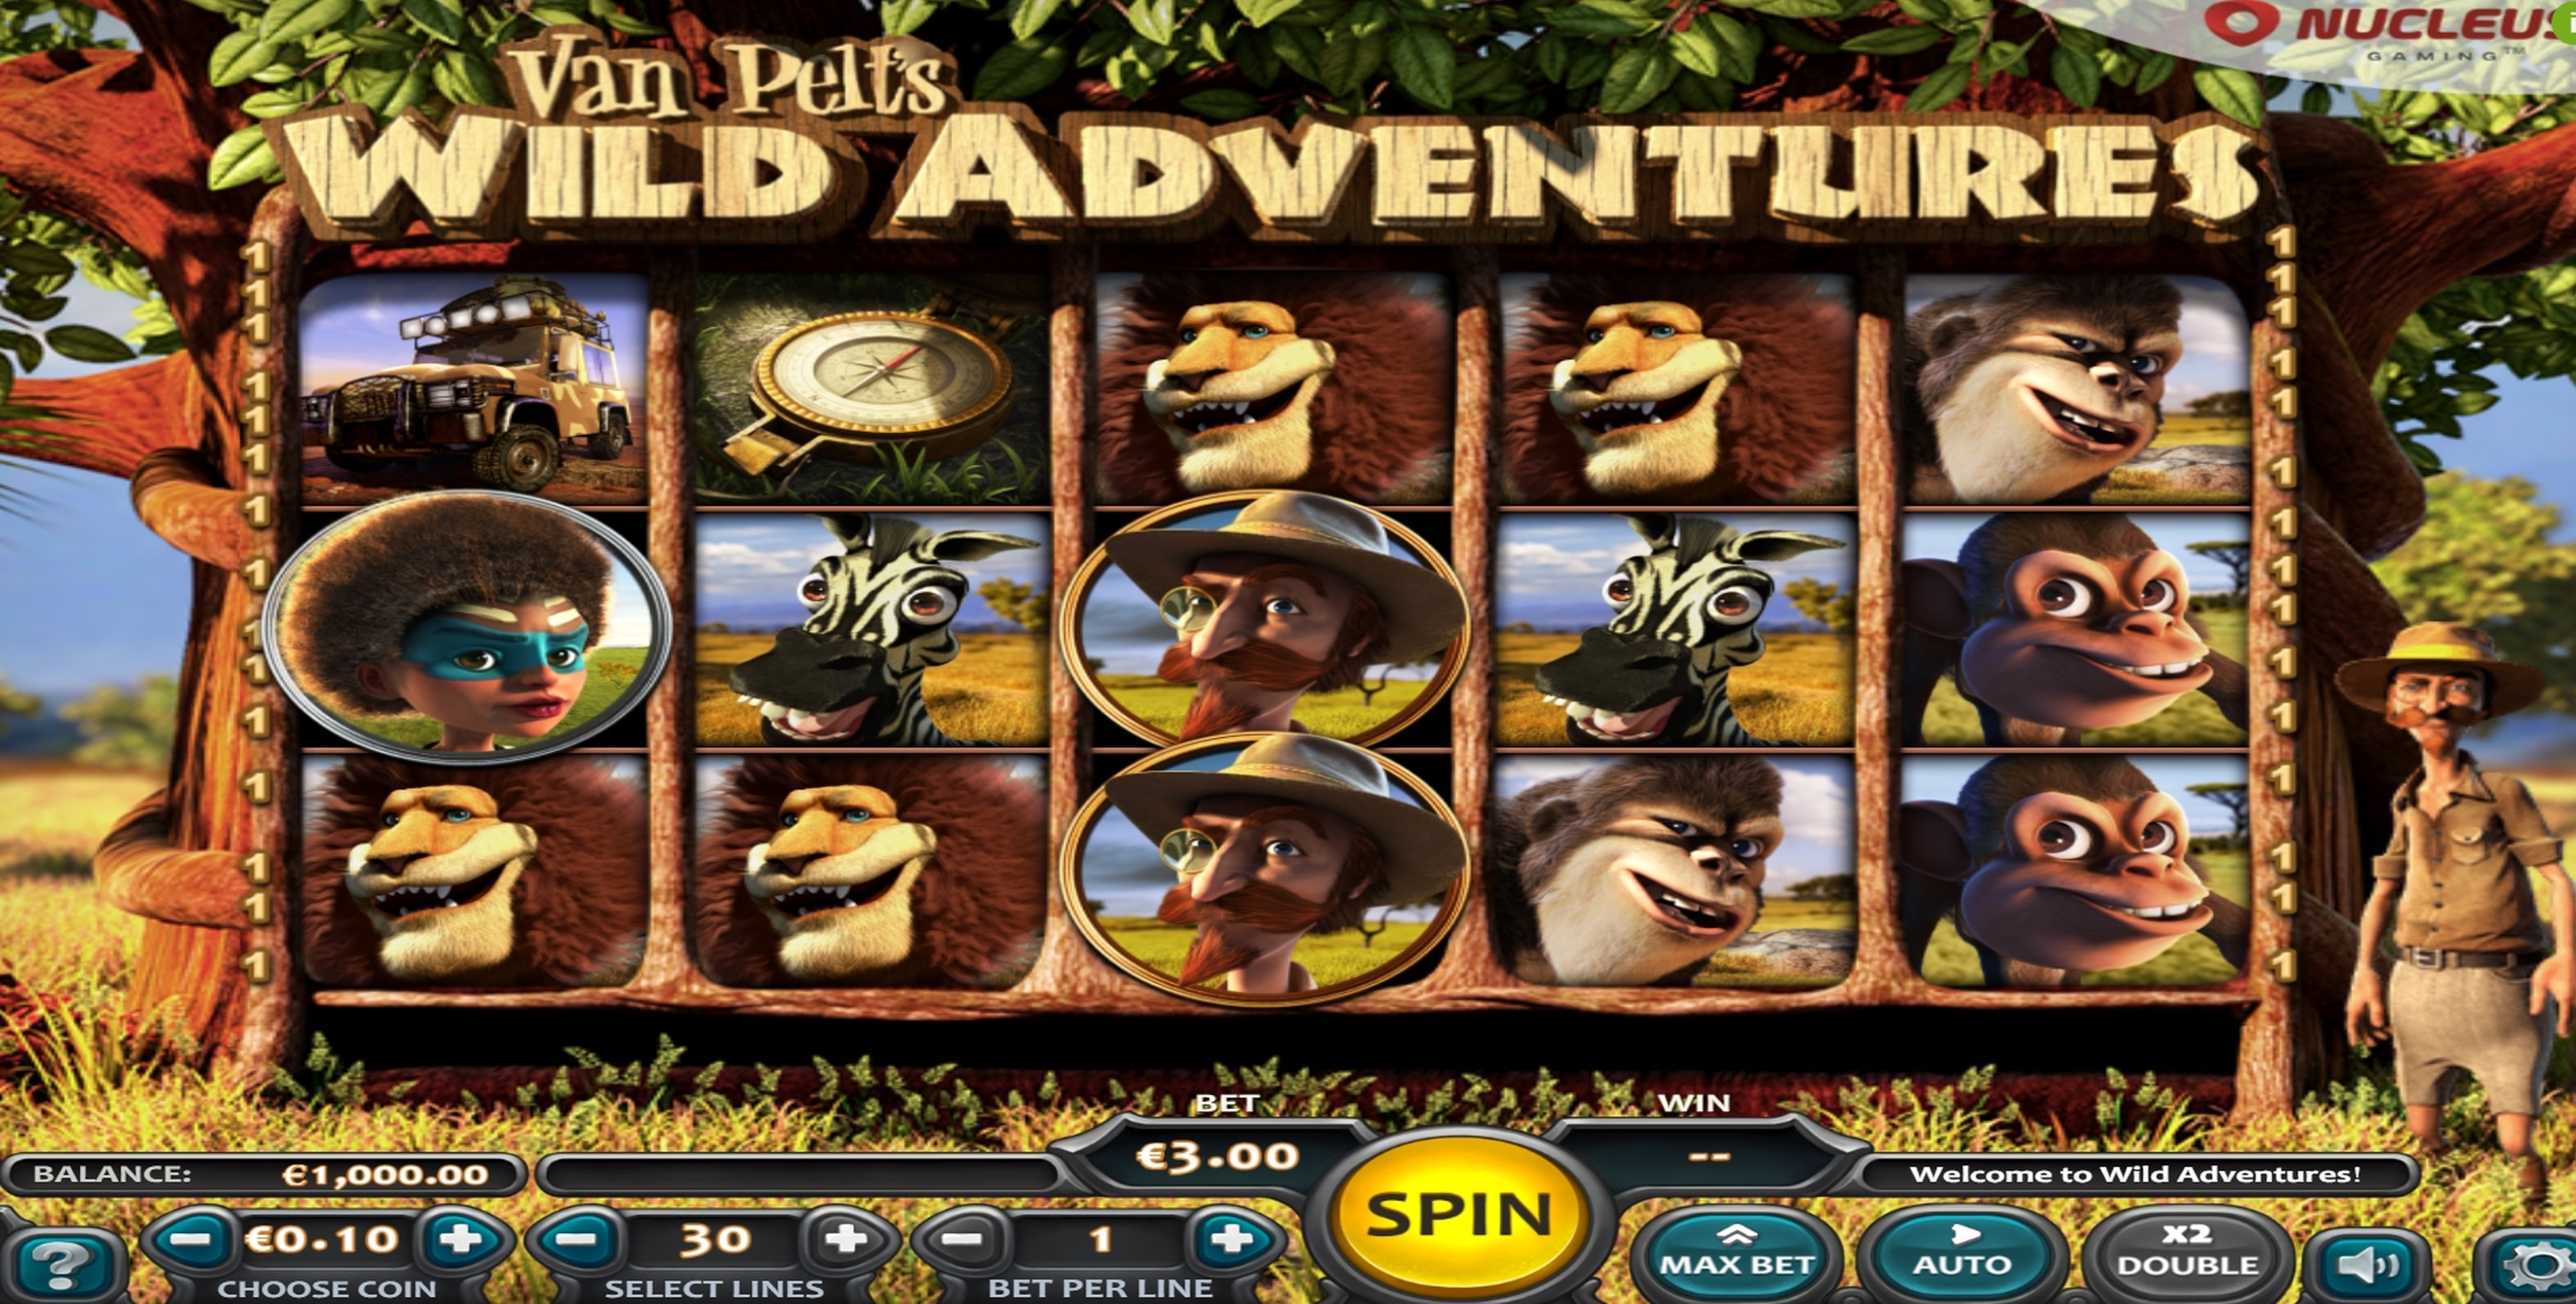 Reels in Van Pelts Wild Adventure Slot Game by Nucleus Gaming